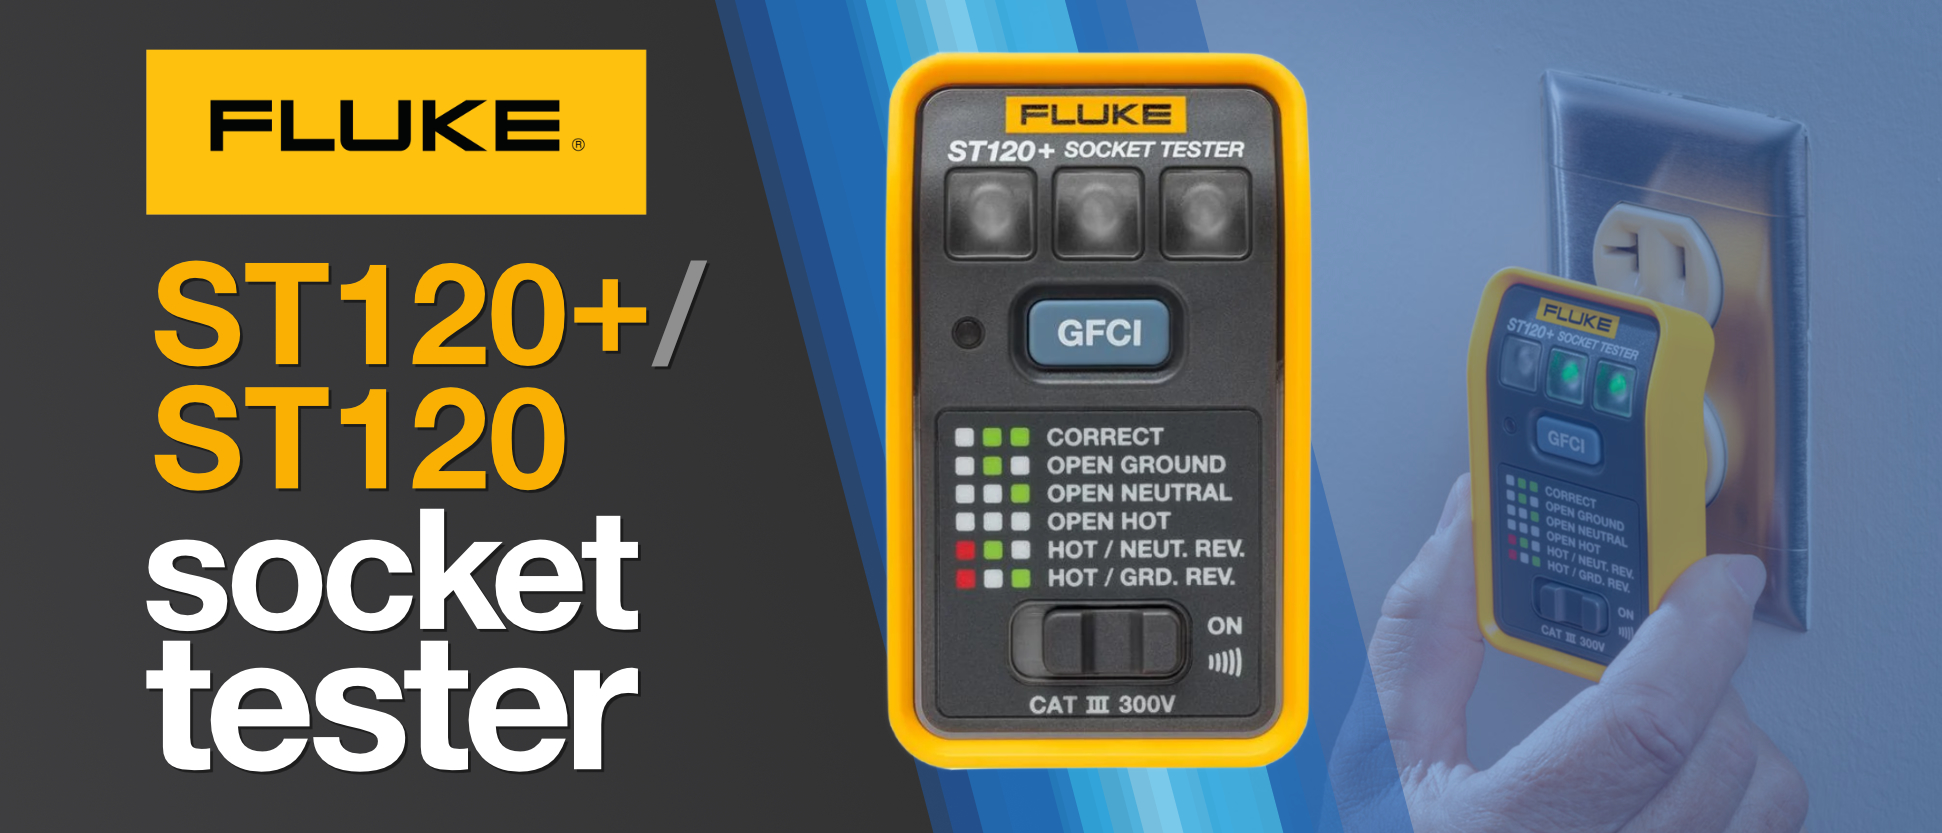 All new Fluke Socket Tester ST120+ and ST120